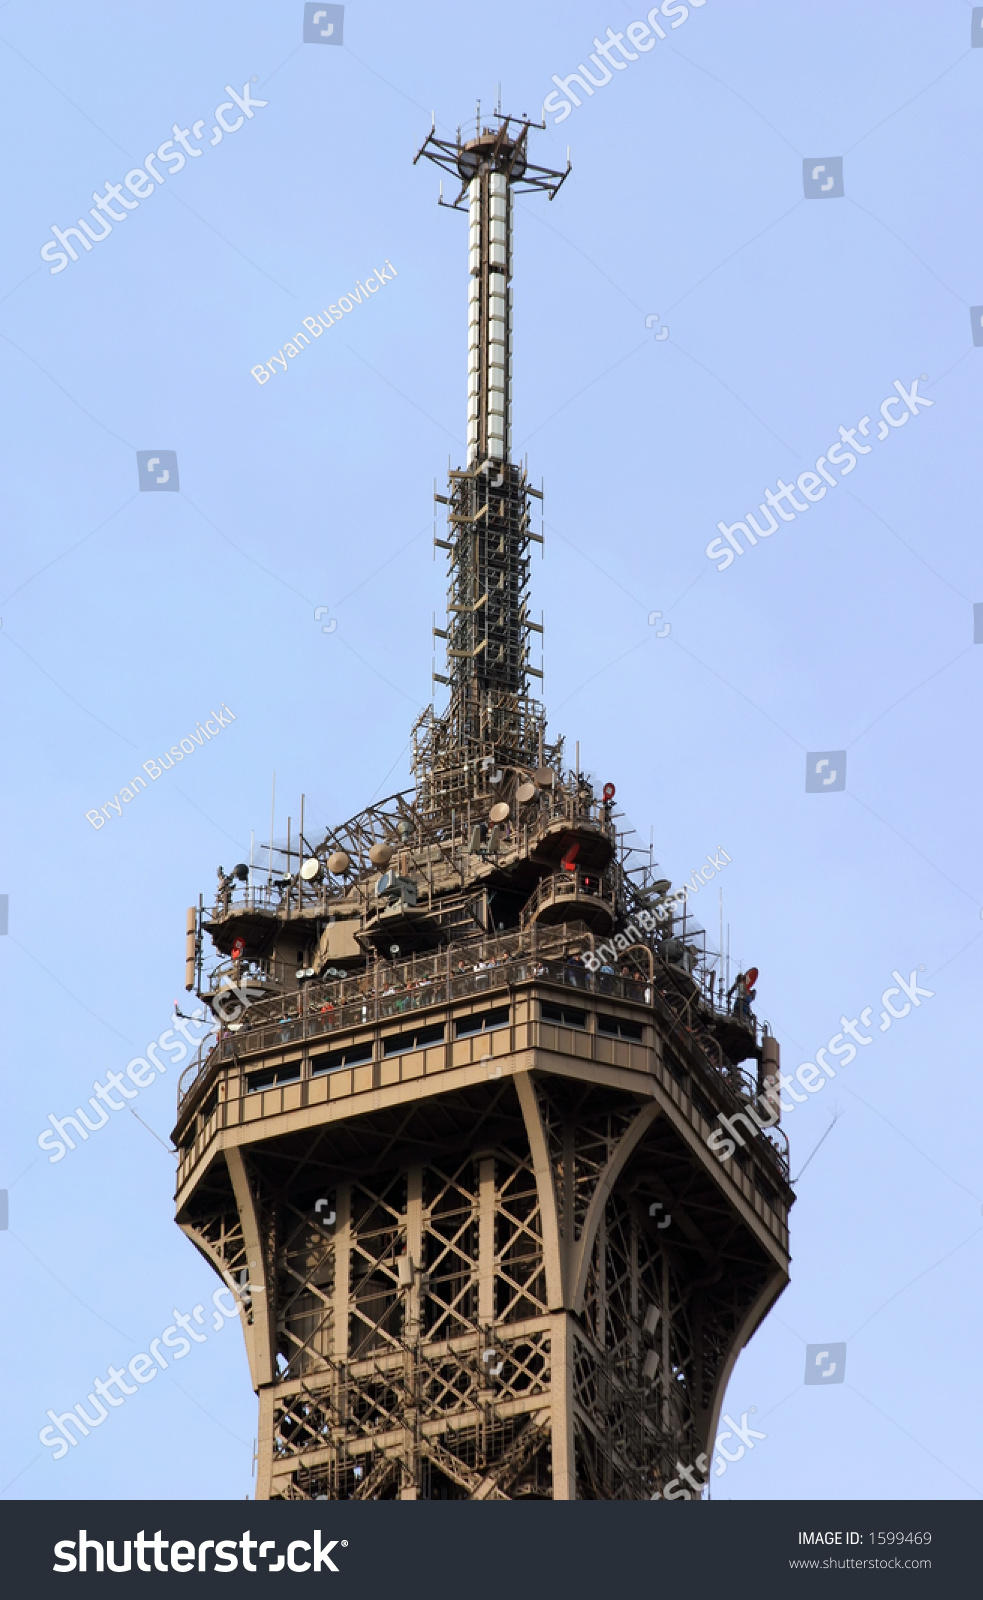 Resultado de imagem para torre eiffel - antena de radio - paris